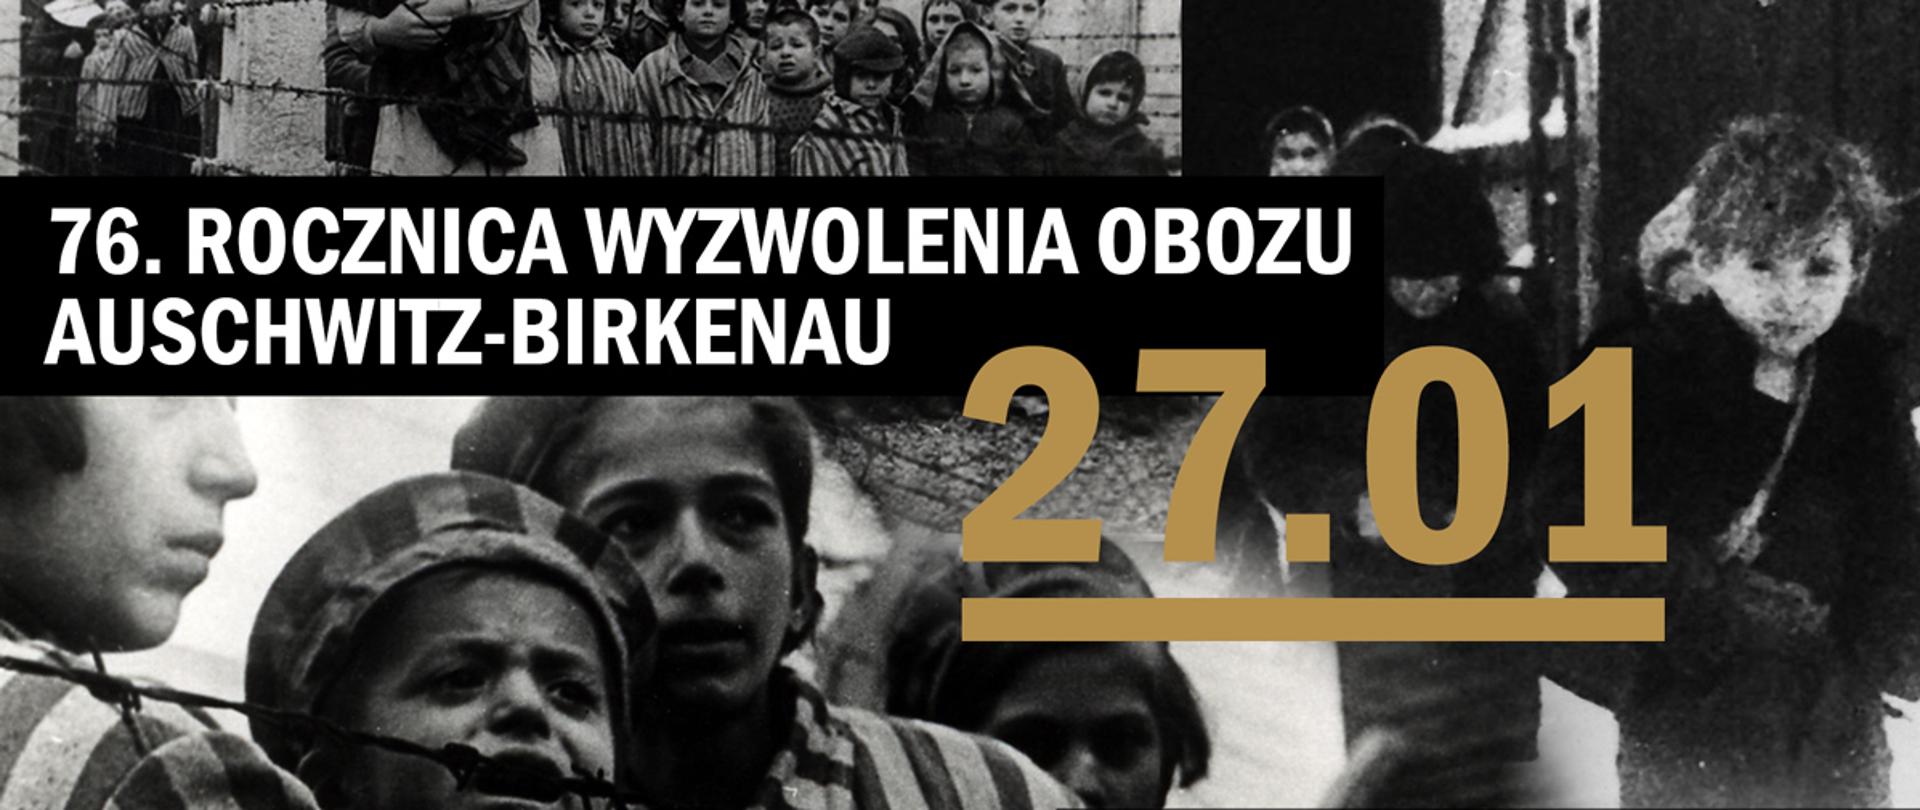 76. rocznica wyzwolenia obozu Auschwitz-Birkenau foto:www.auschwitz.org